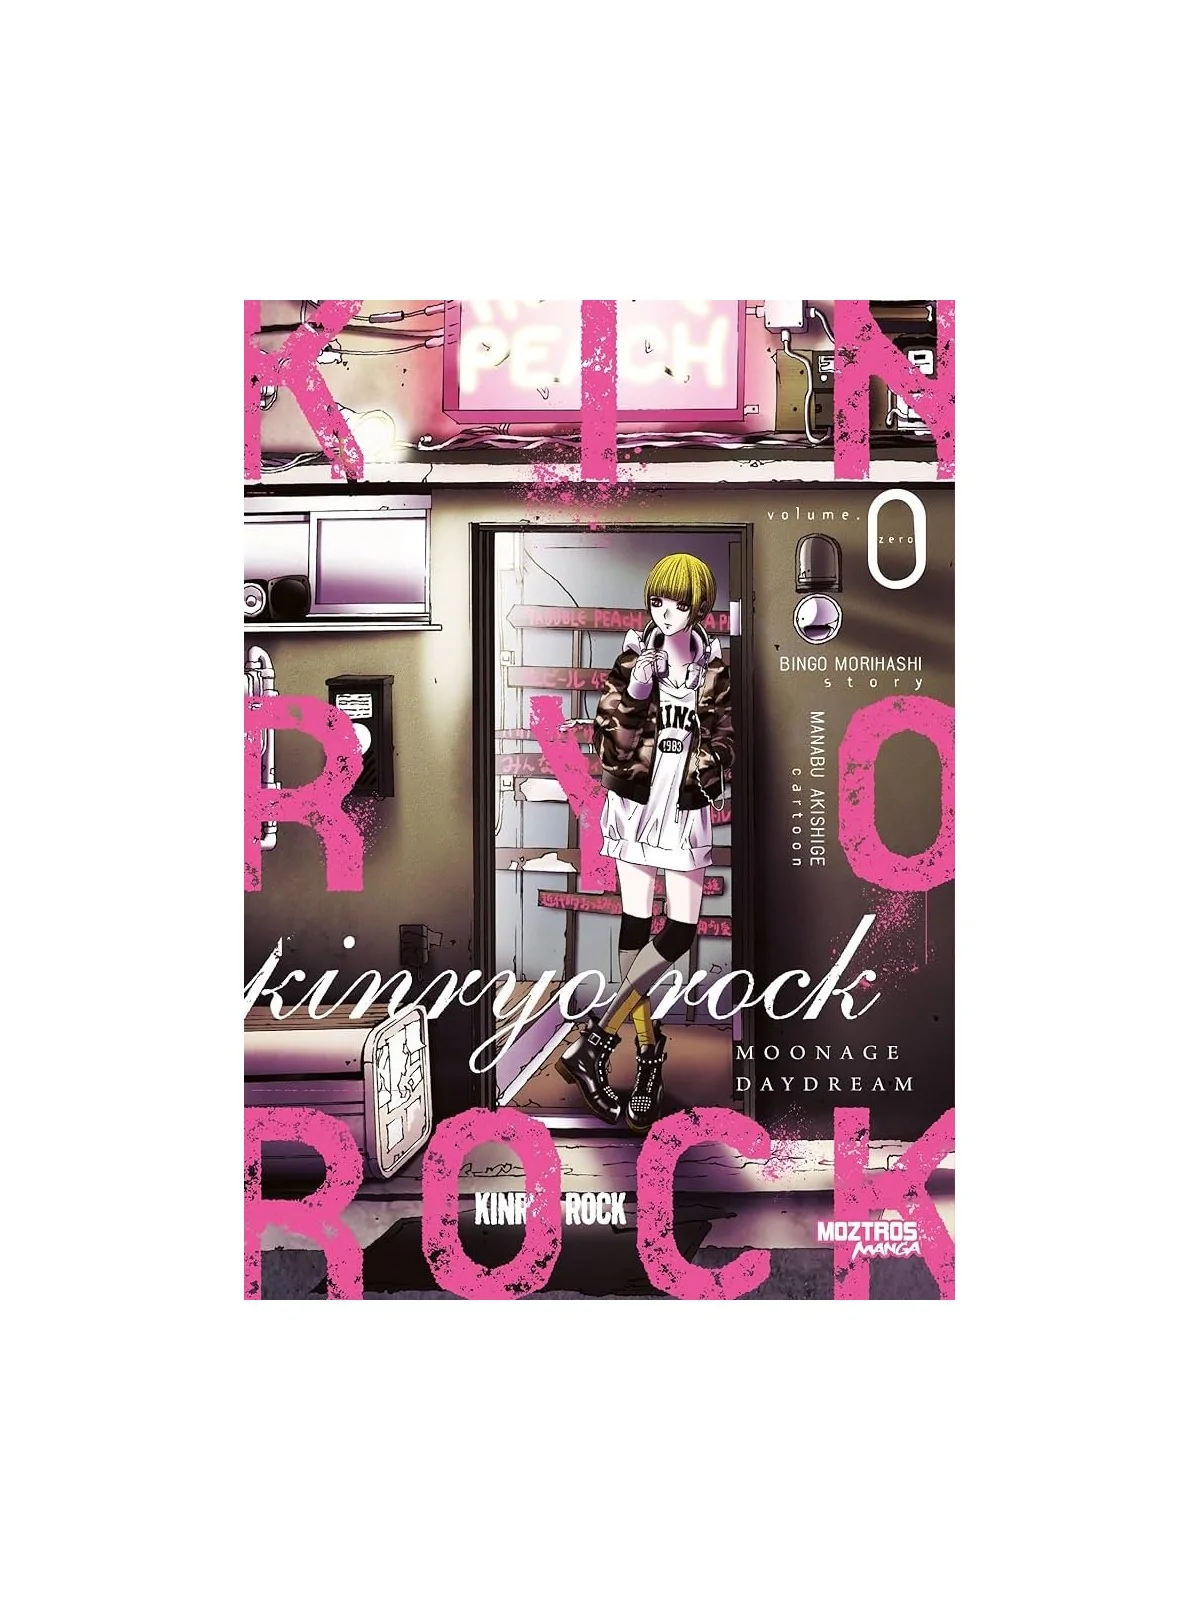 Comprar Kinryo Rock 0 barato al mejor precio 9,41 € de Moztros